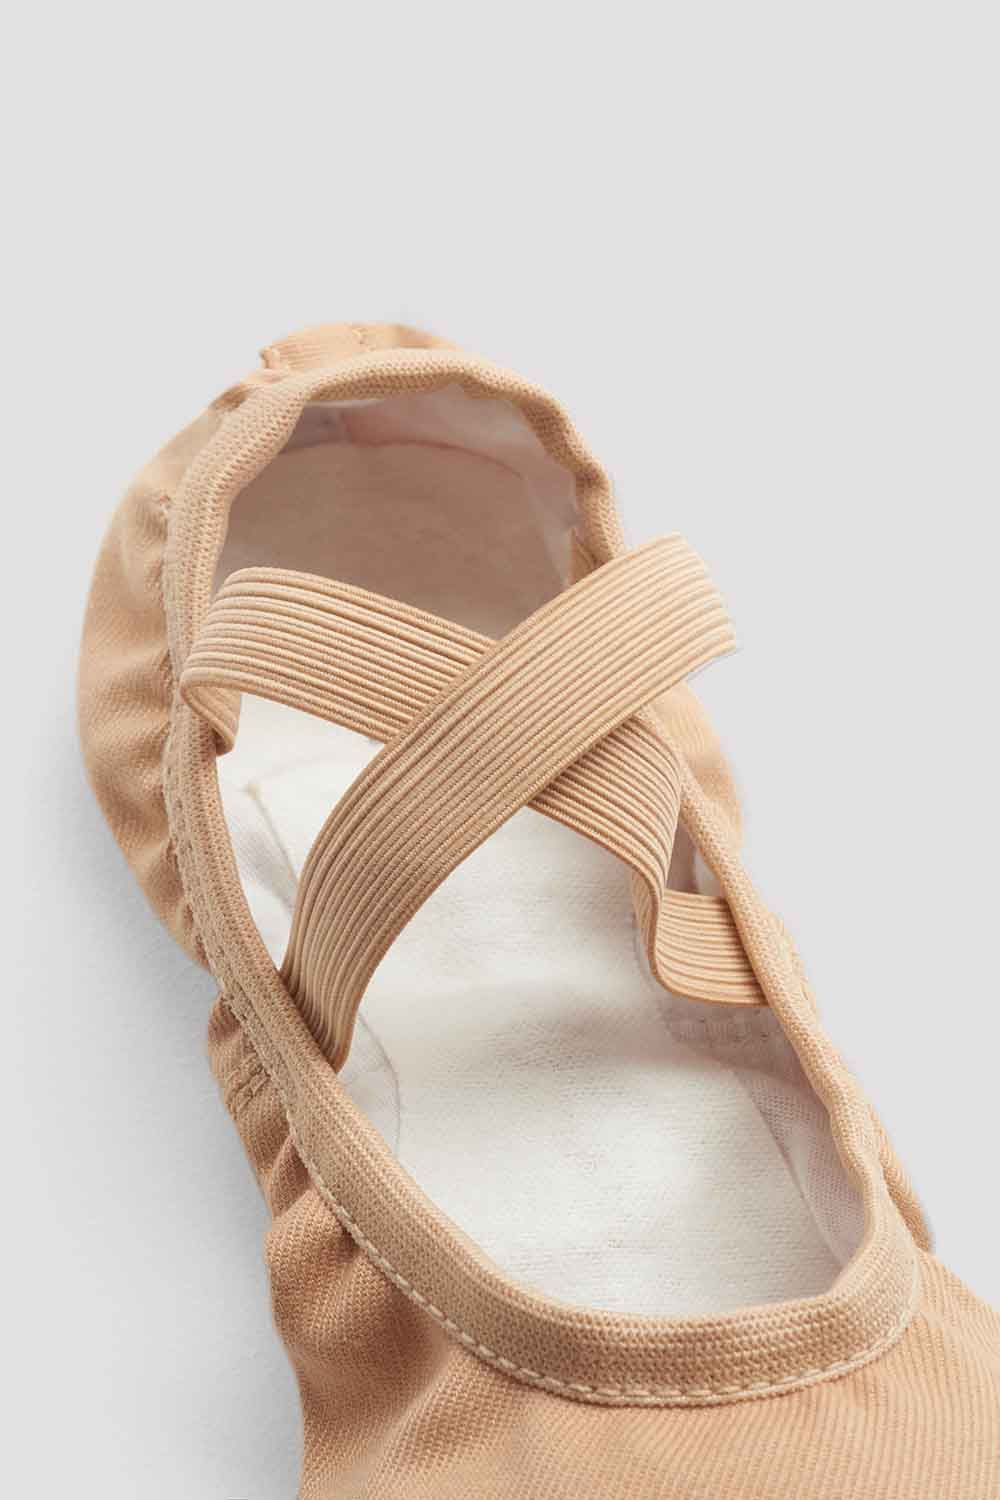 Demi-pointes Bloch Performa, le nouveau chausson ultra confortable pointure  35,5 color Sable